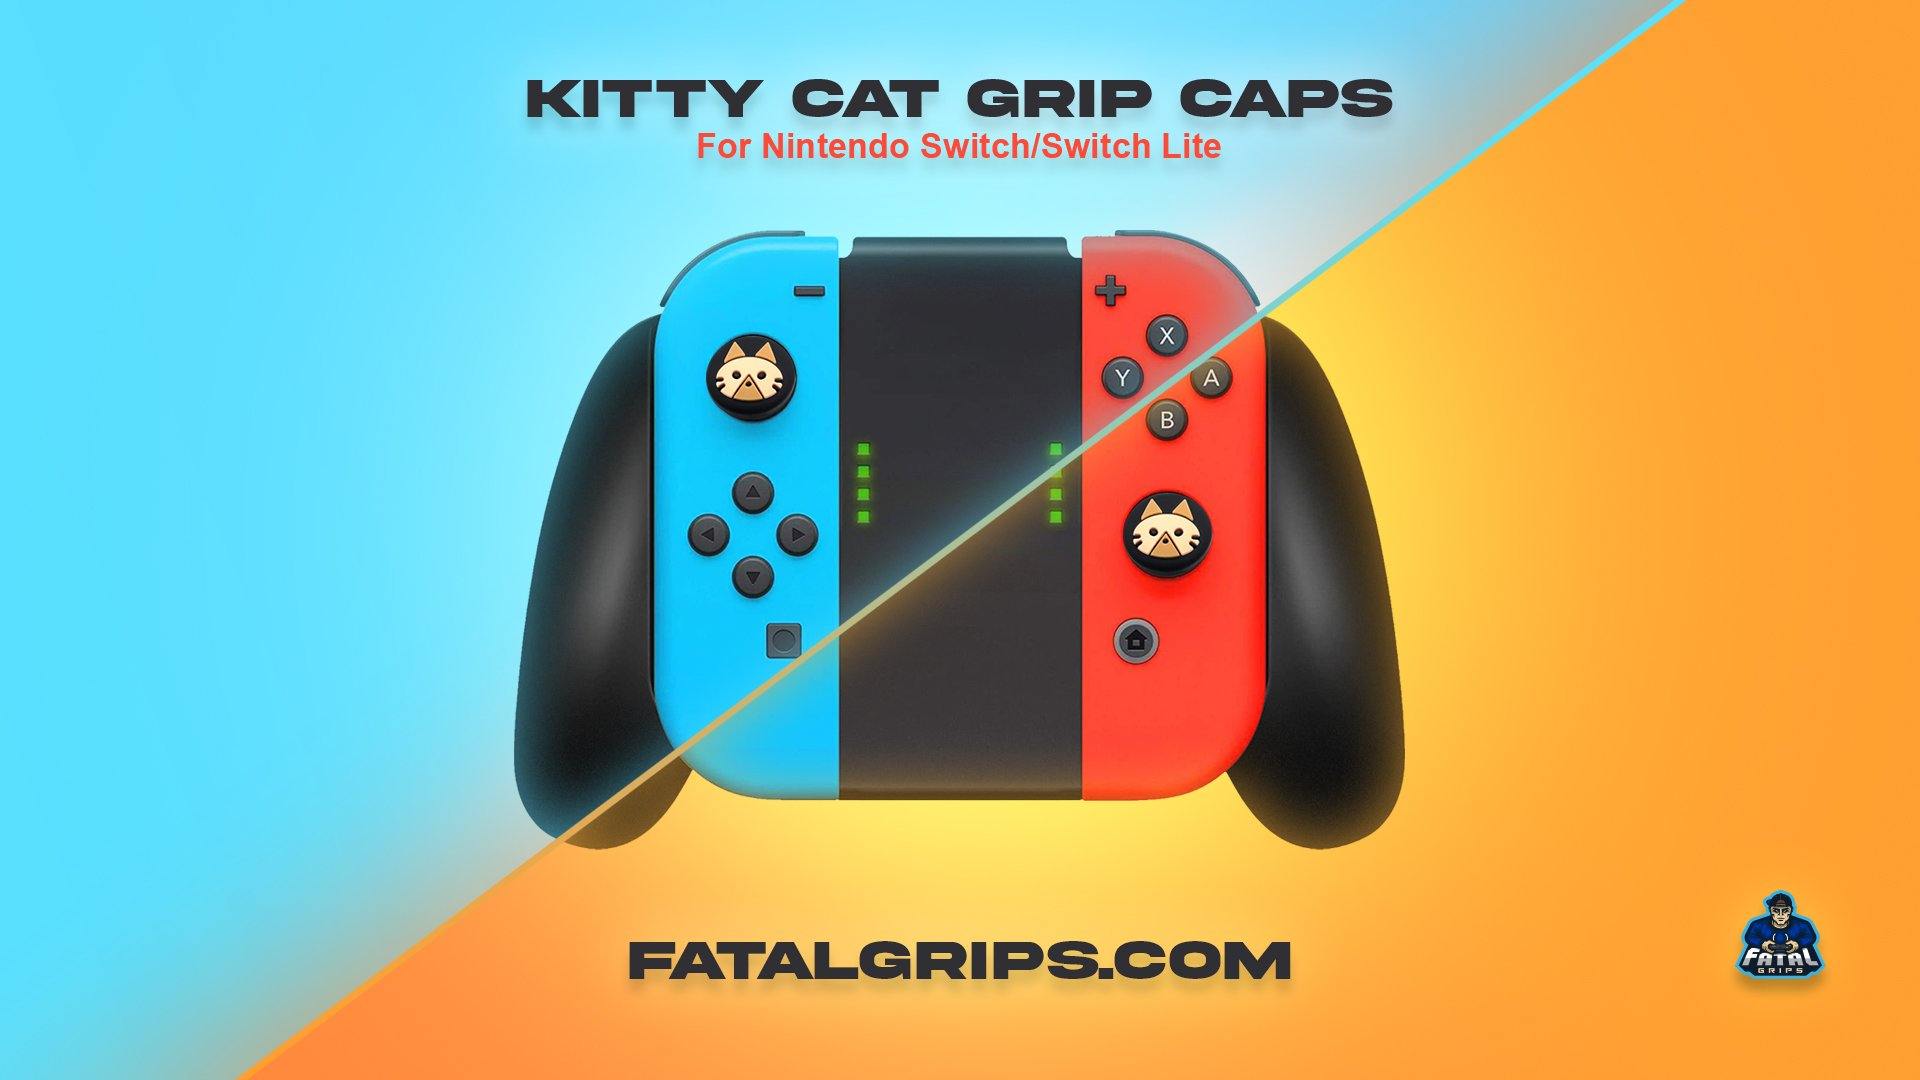 Kitty Cat Grips - Fatal Grips